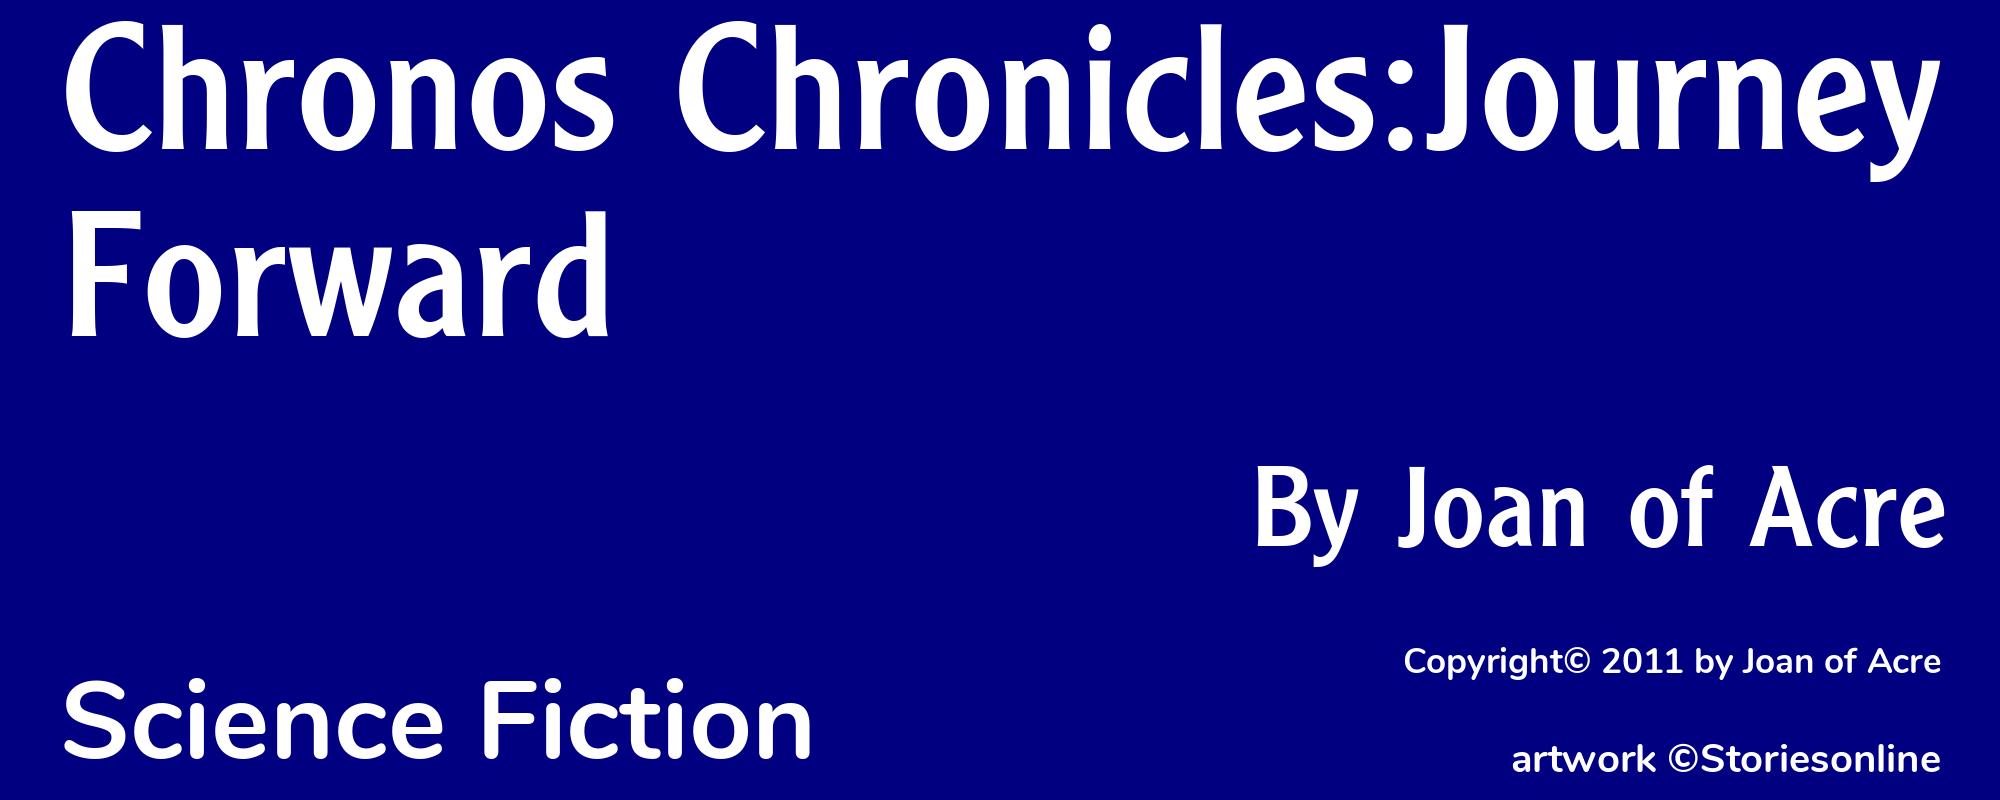 Chronos Chronicles:Journey Forward - Cover